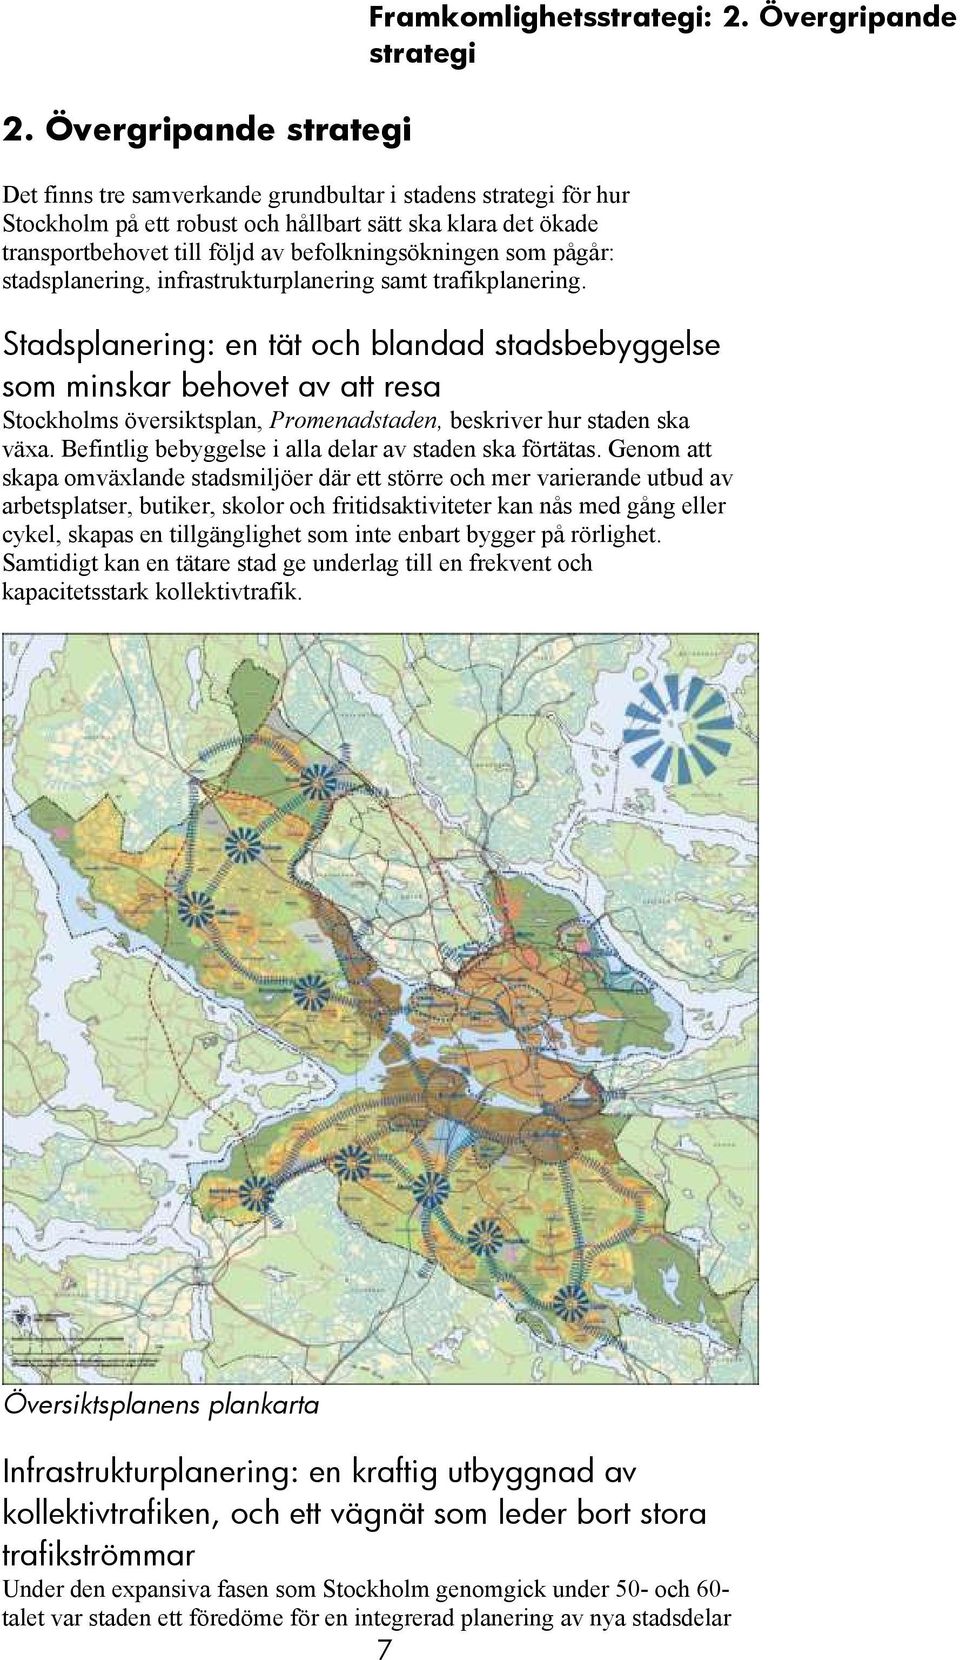 Övergripande strategi Stadsplanering: en tät och blandad stadsbebyggelse som minskar behovet av att resa Stockholms översiktsplan, Promenadstaden, beskriver hur staden ska växa.